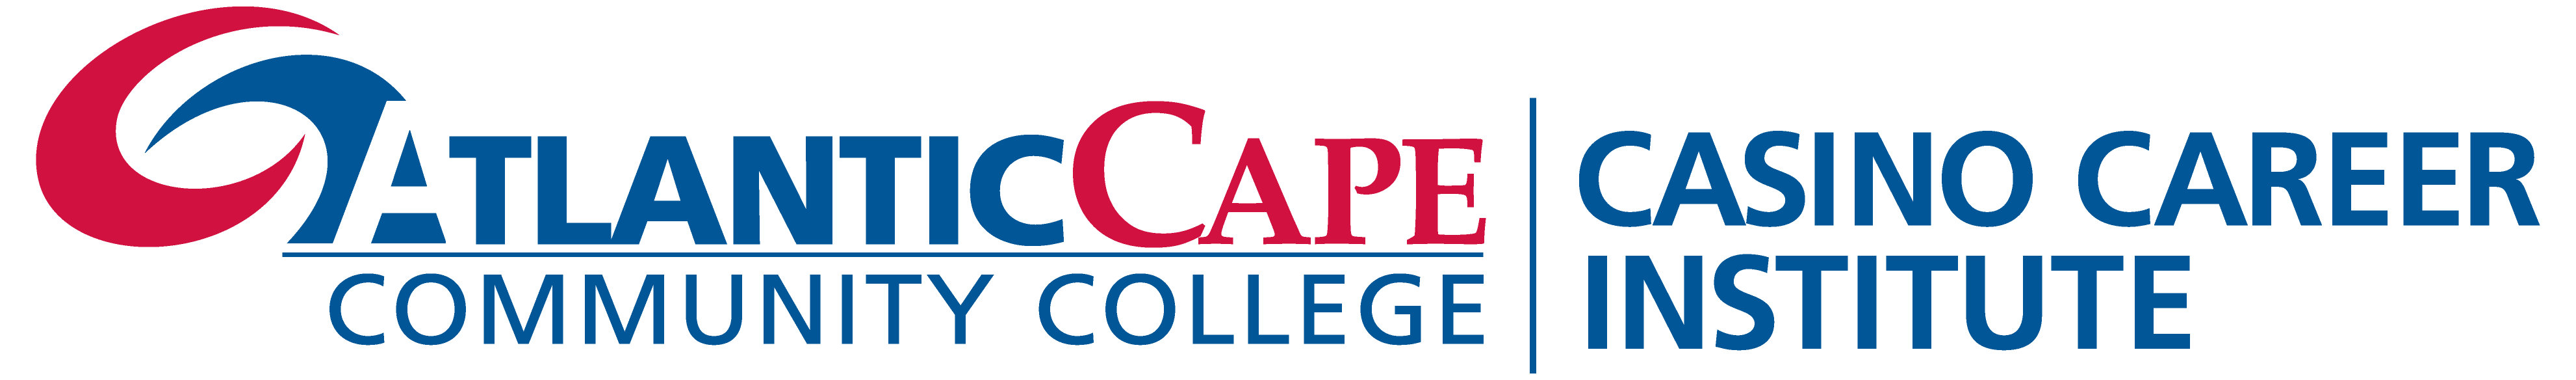 Casino Career Institute logo